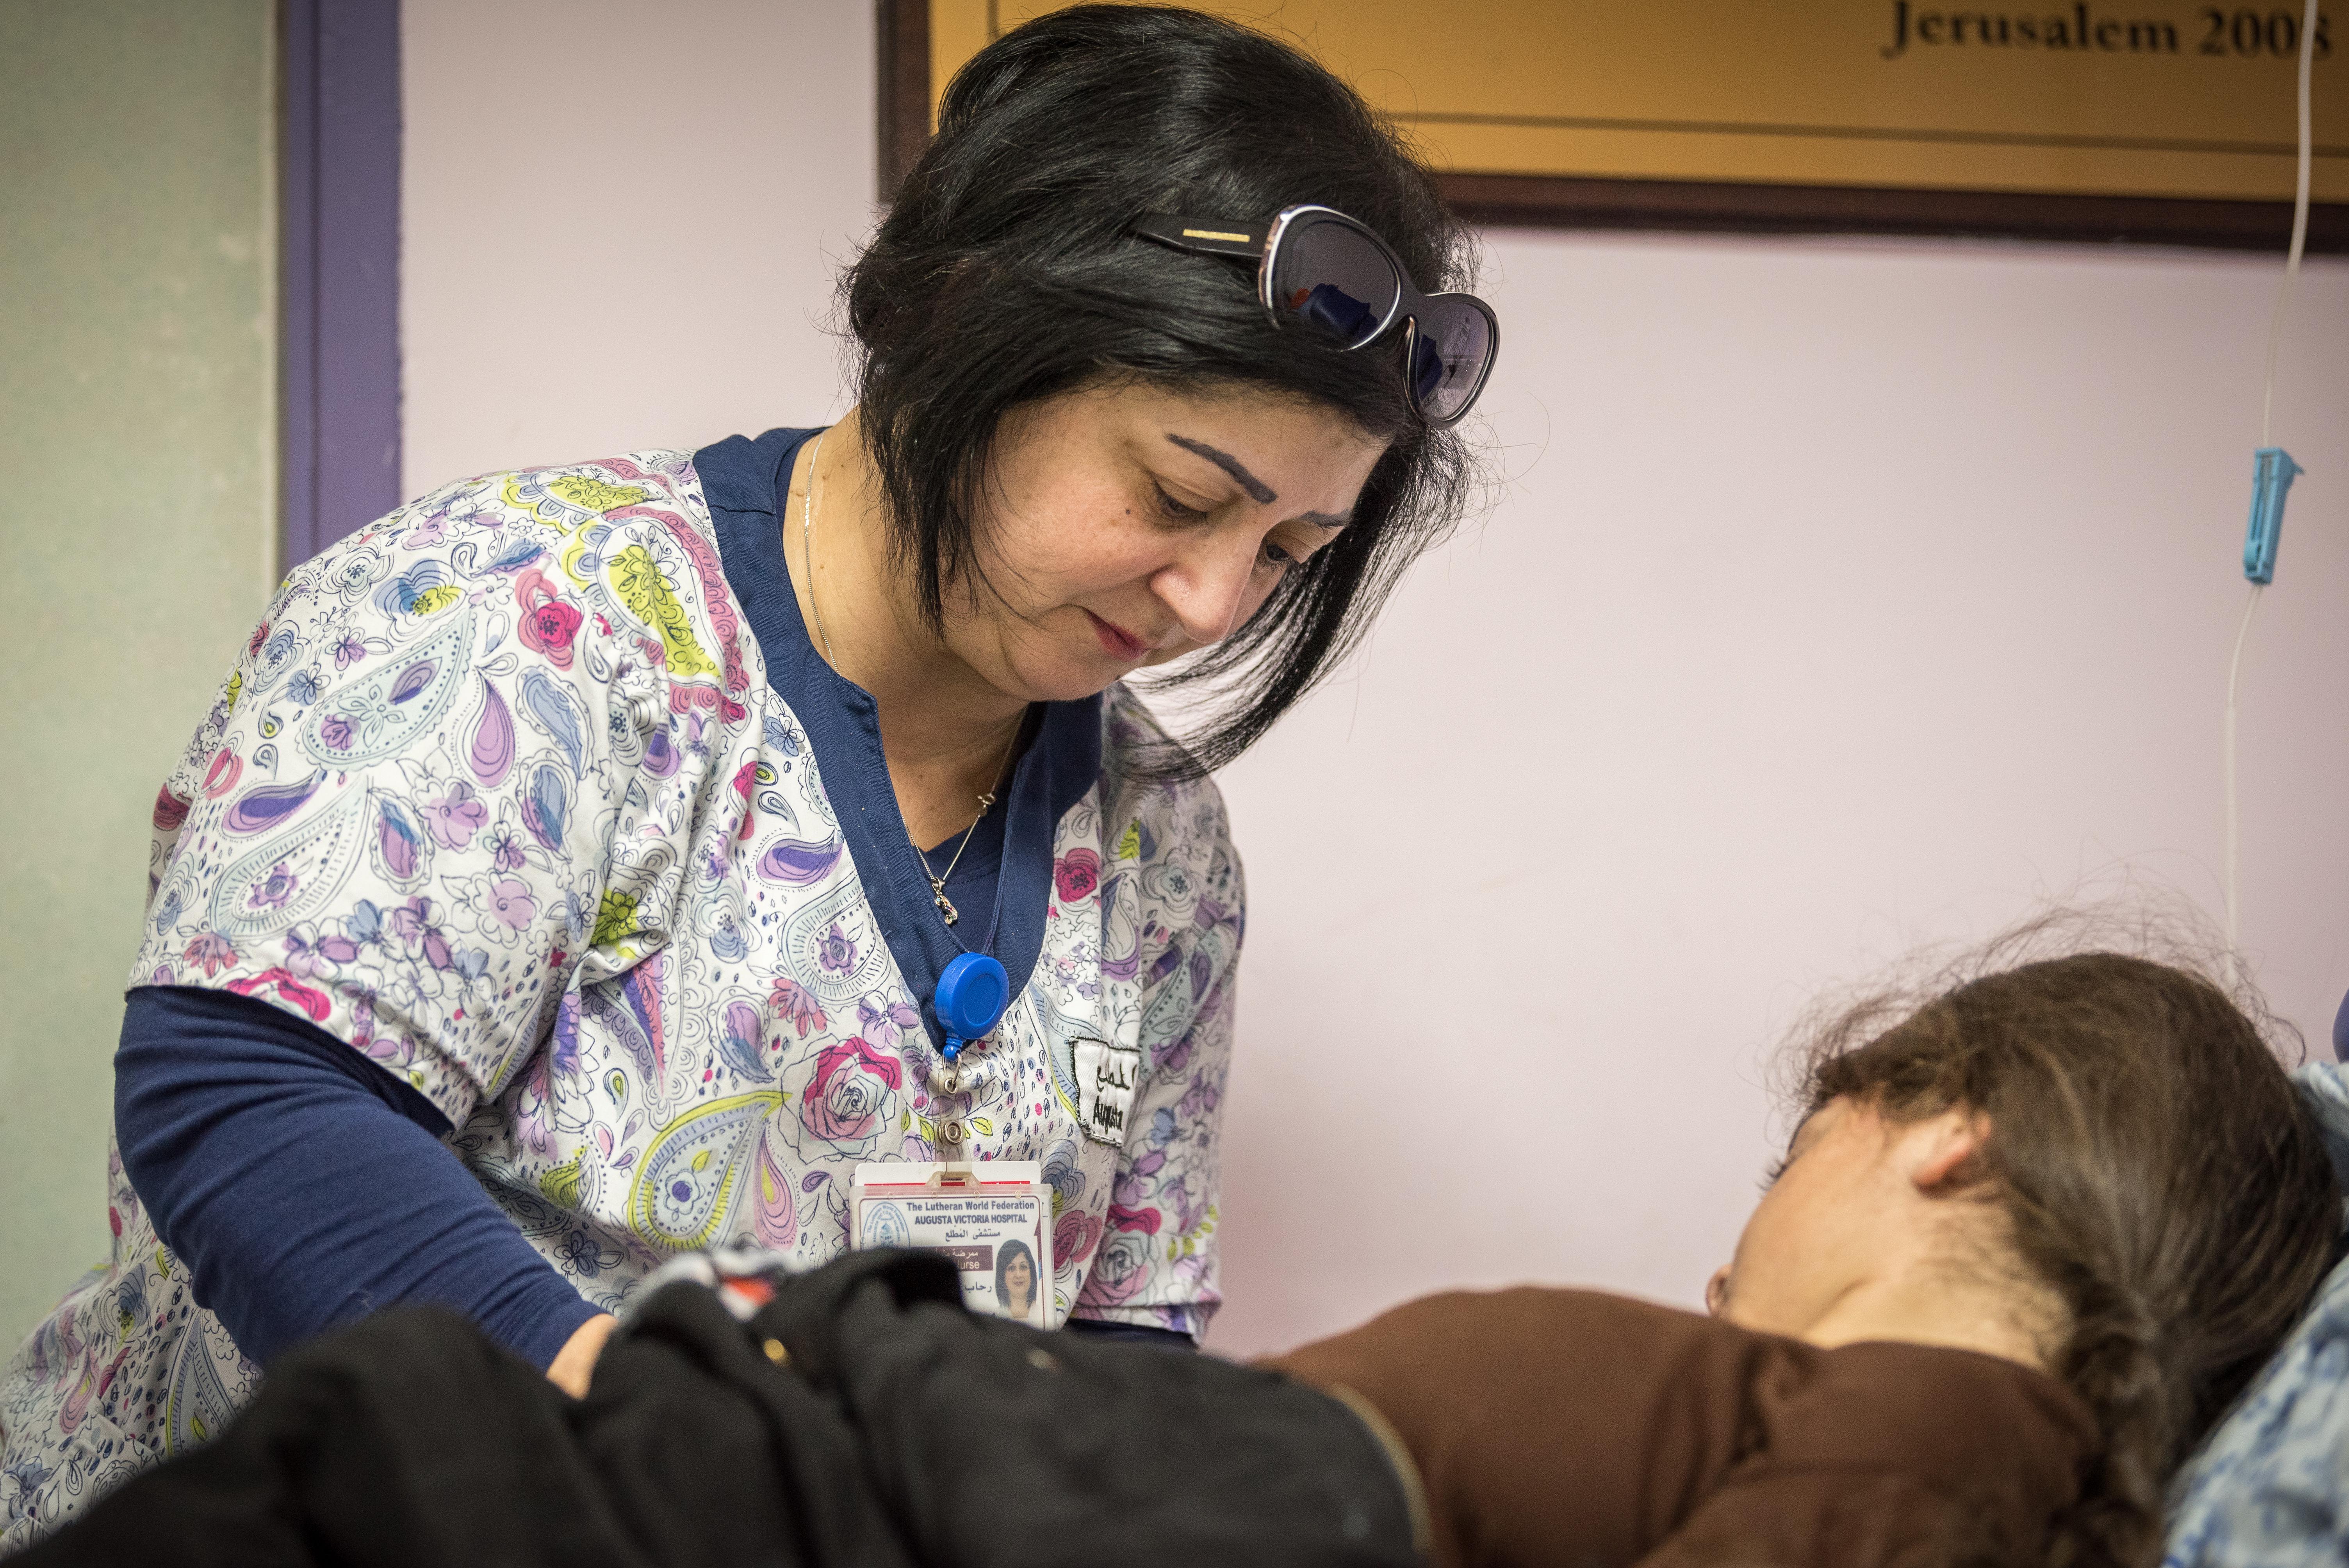 Rihab George, leitende Krankenschwester in der Ambulanz des Augusta-Victoria-Krankenhauses, behandelt eine junge Patientin. Das Krankenhaus bietet Menschen aus Palästina eine spezialisierte Behandlung an, die ihnen anderswo nicht zur Verfügung steht. Foto: LWB/Albin Hillert